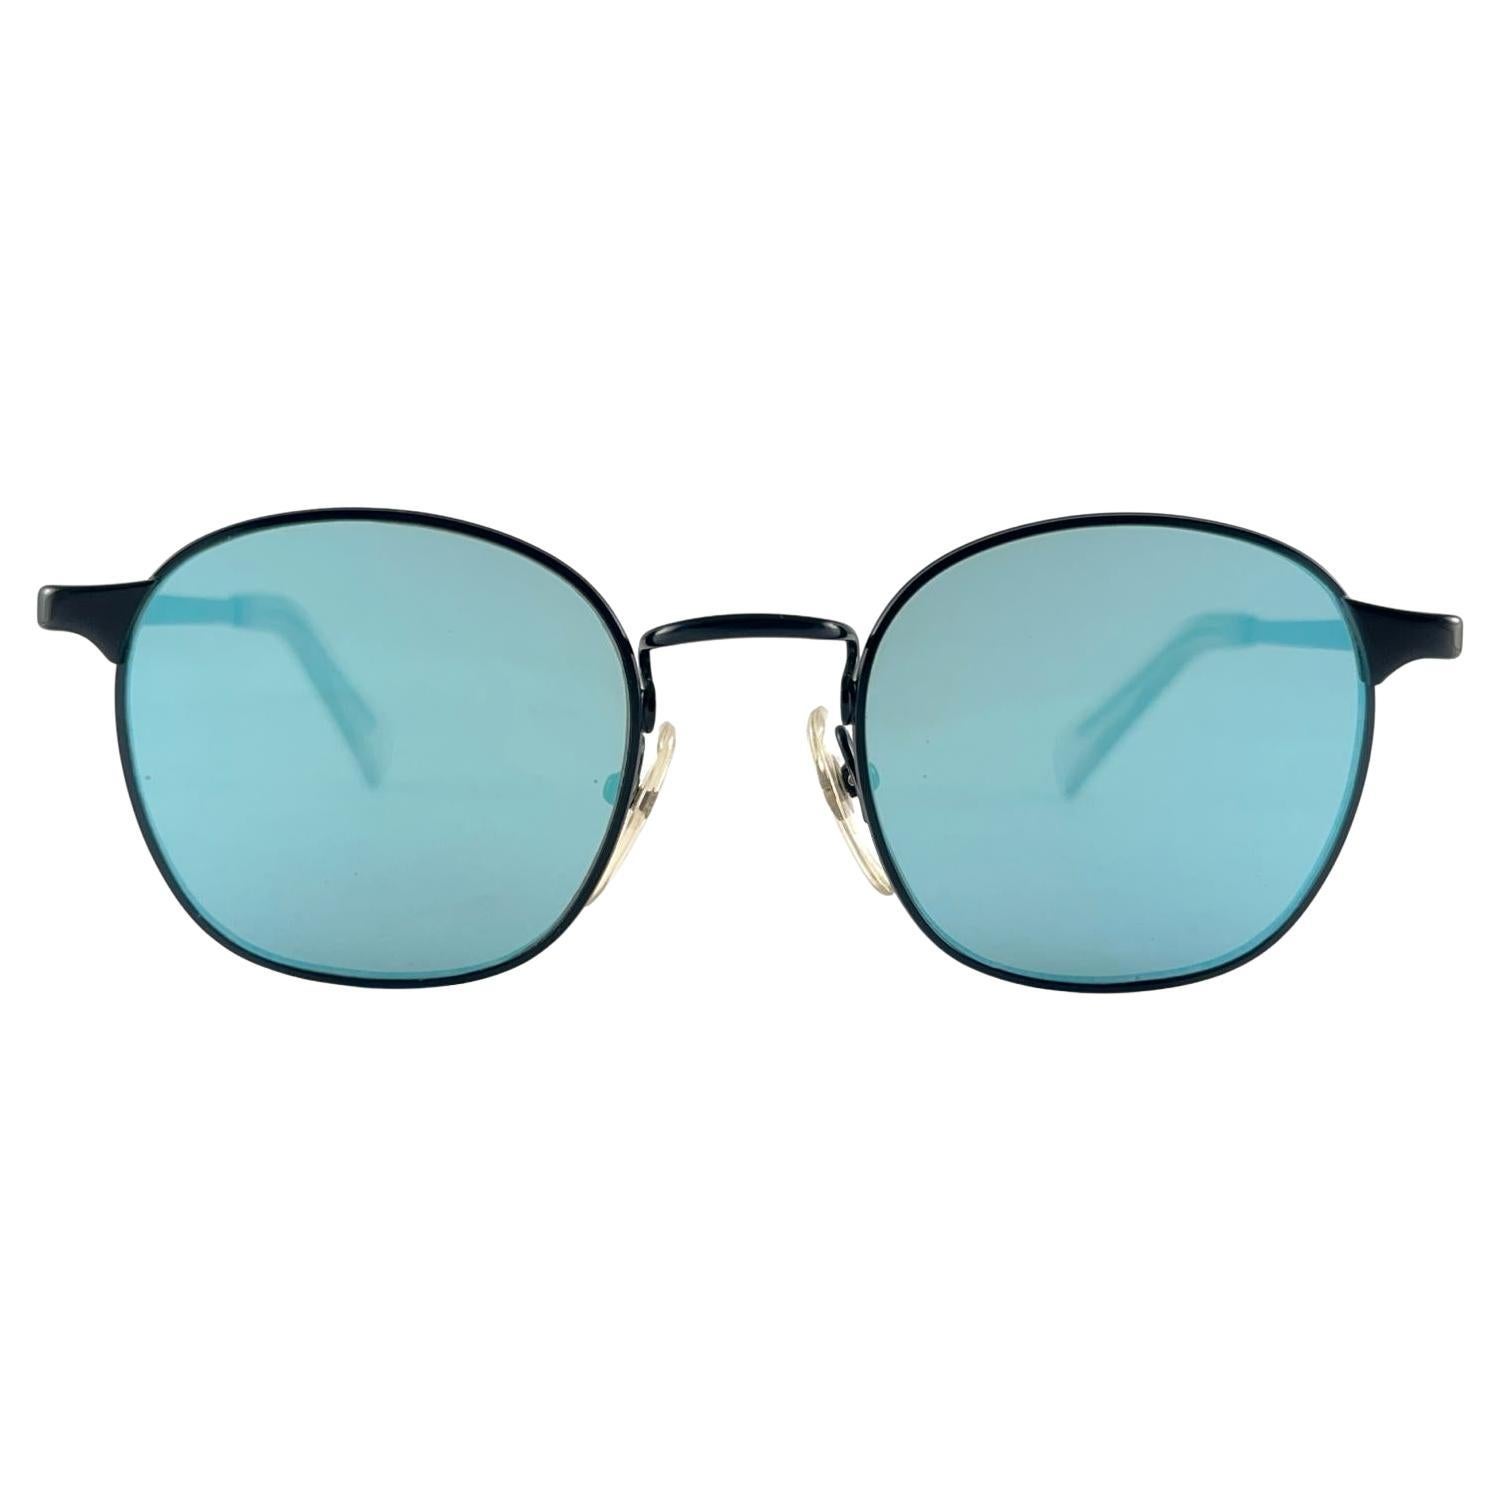 New Jean Paul Gaultier 57 0172 Oval Black Sunglasses 1990's Made in Japan  en vente